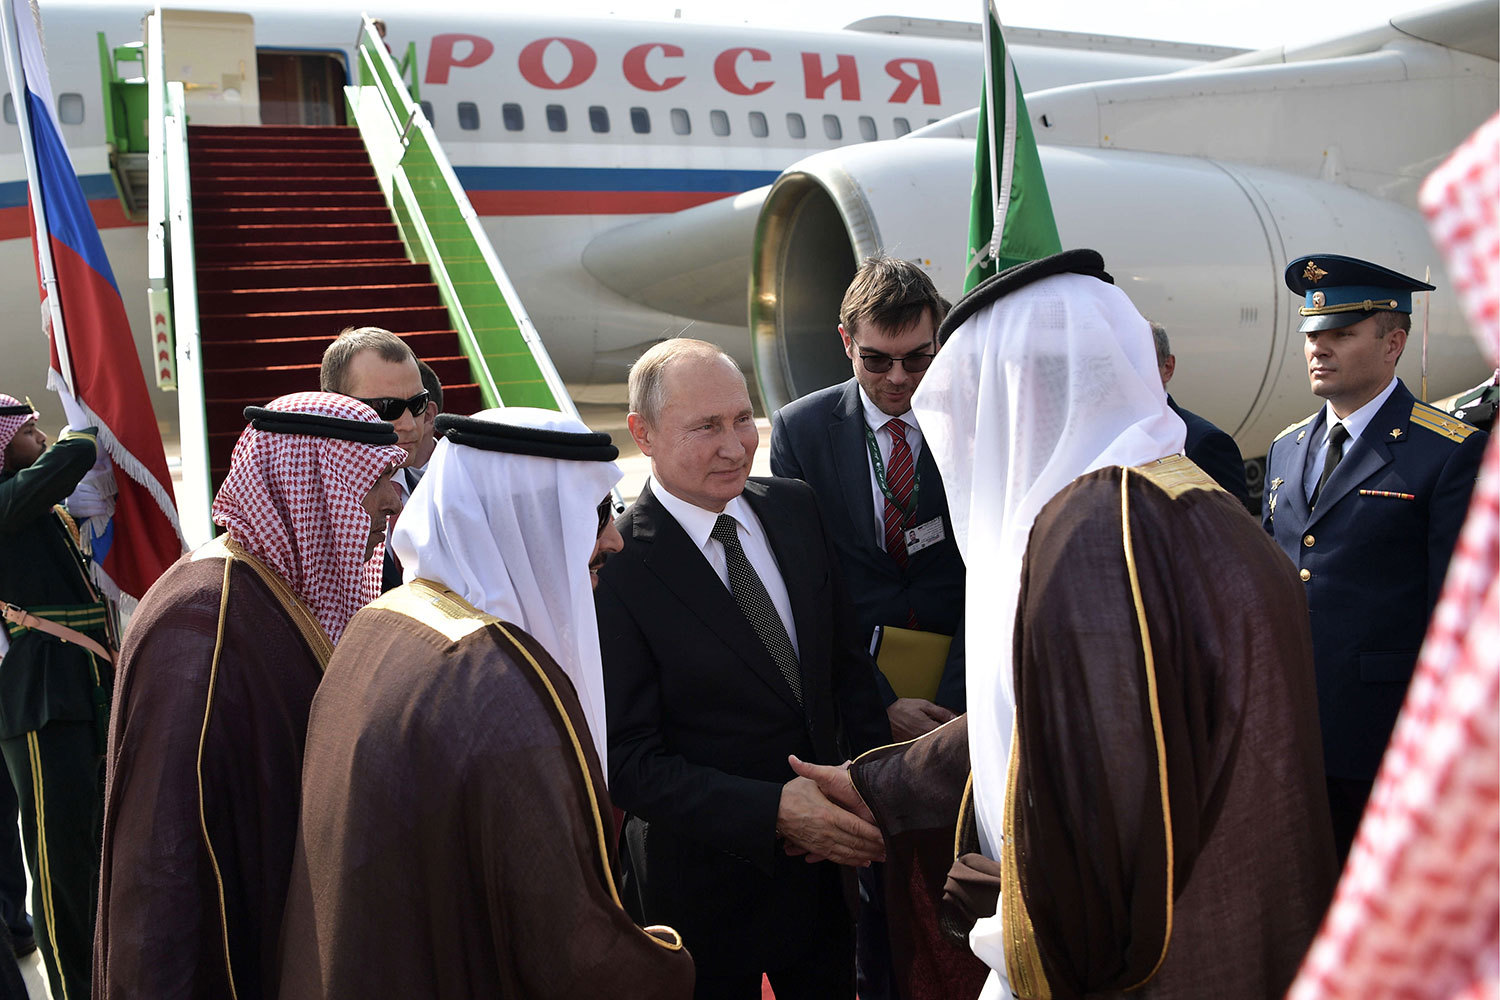 Лавров назвал визит Путина в Саудовскую Аравию историческим